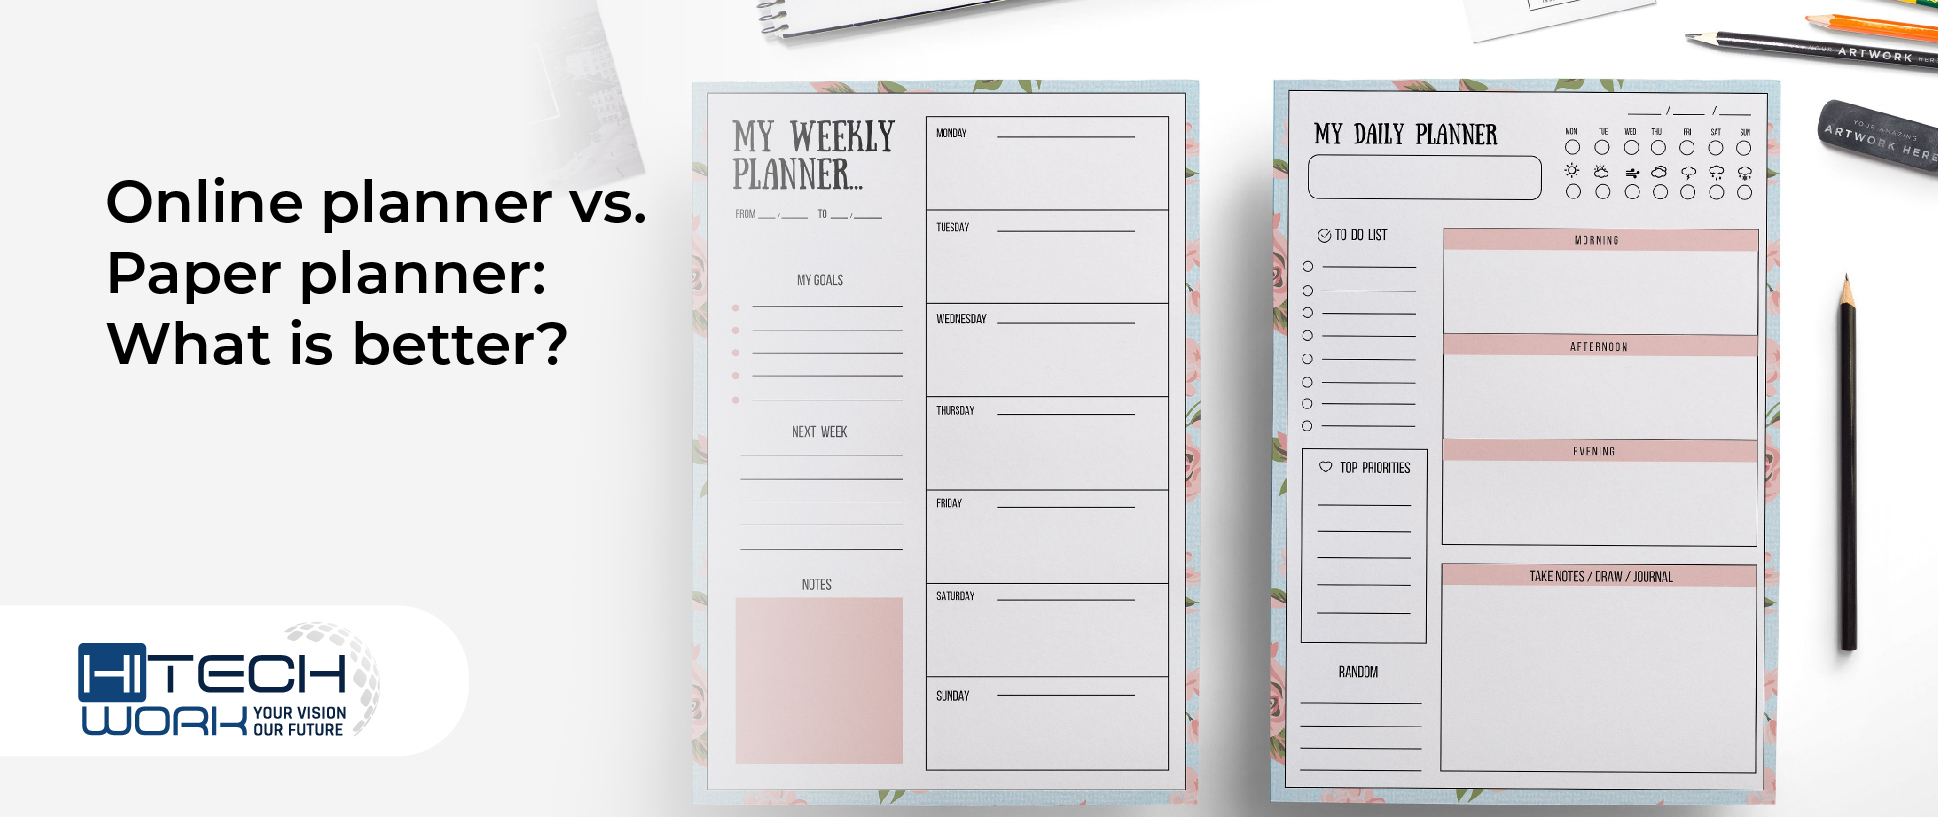 Online planner vs. Paper planner